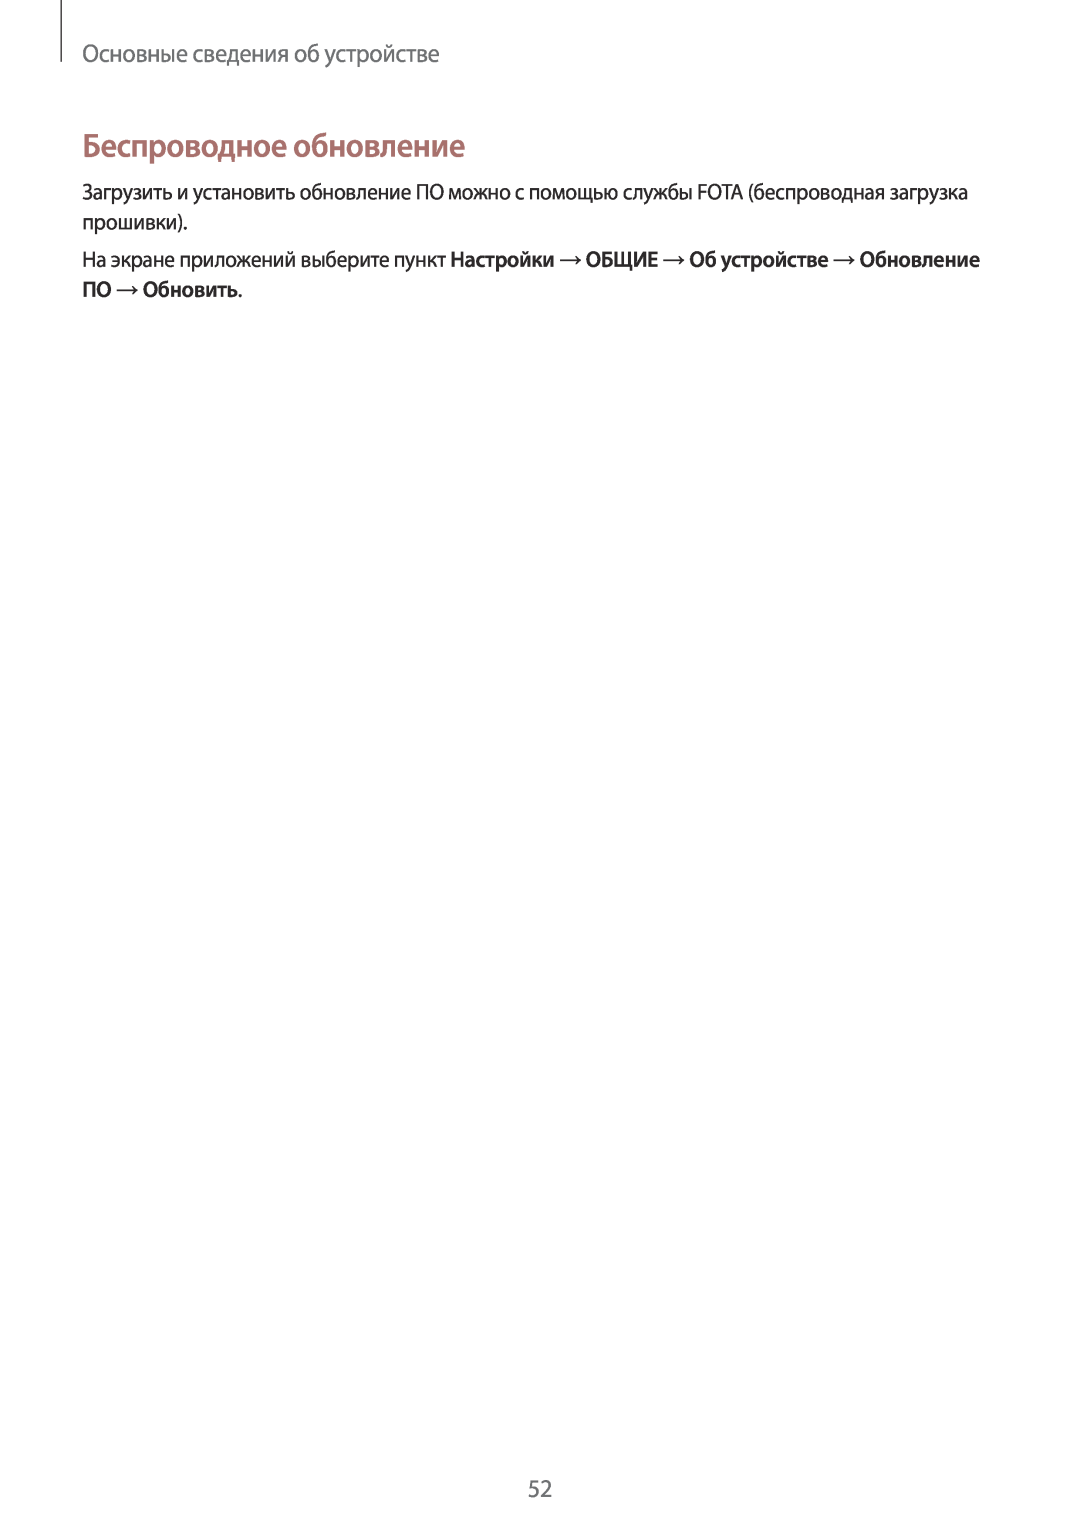 Samsung SM-P9000ZKASEB, SM-P9000ZWASEB, SM-P9000ZWASER manual Беспроводное обновление, Основные сведения об устройстве 